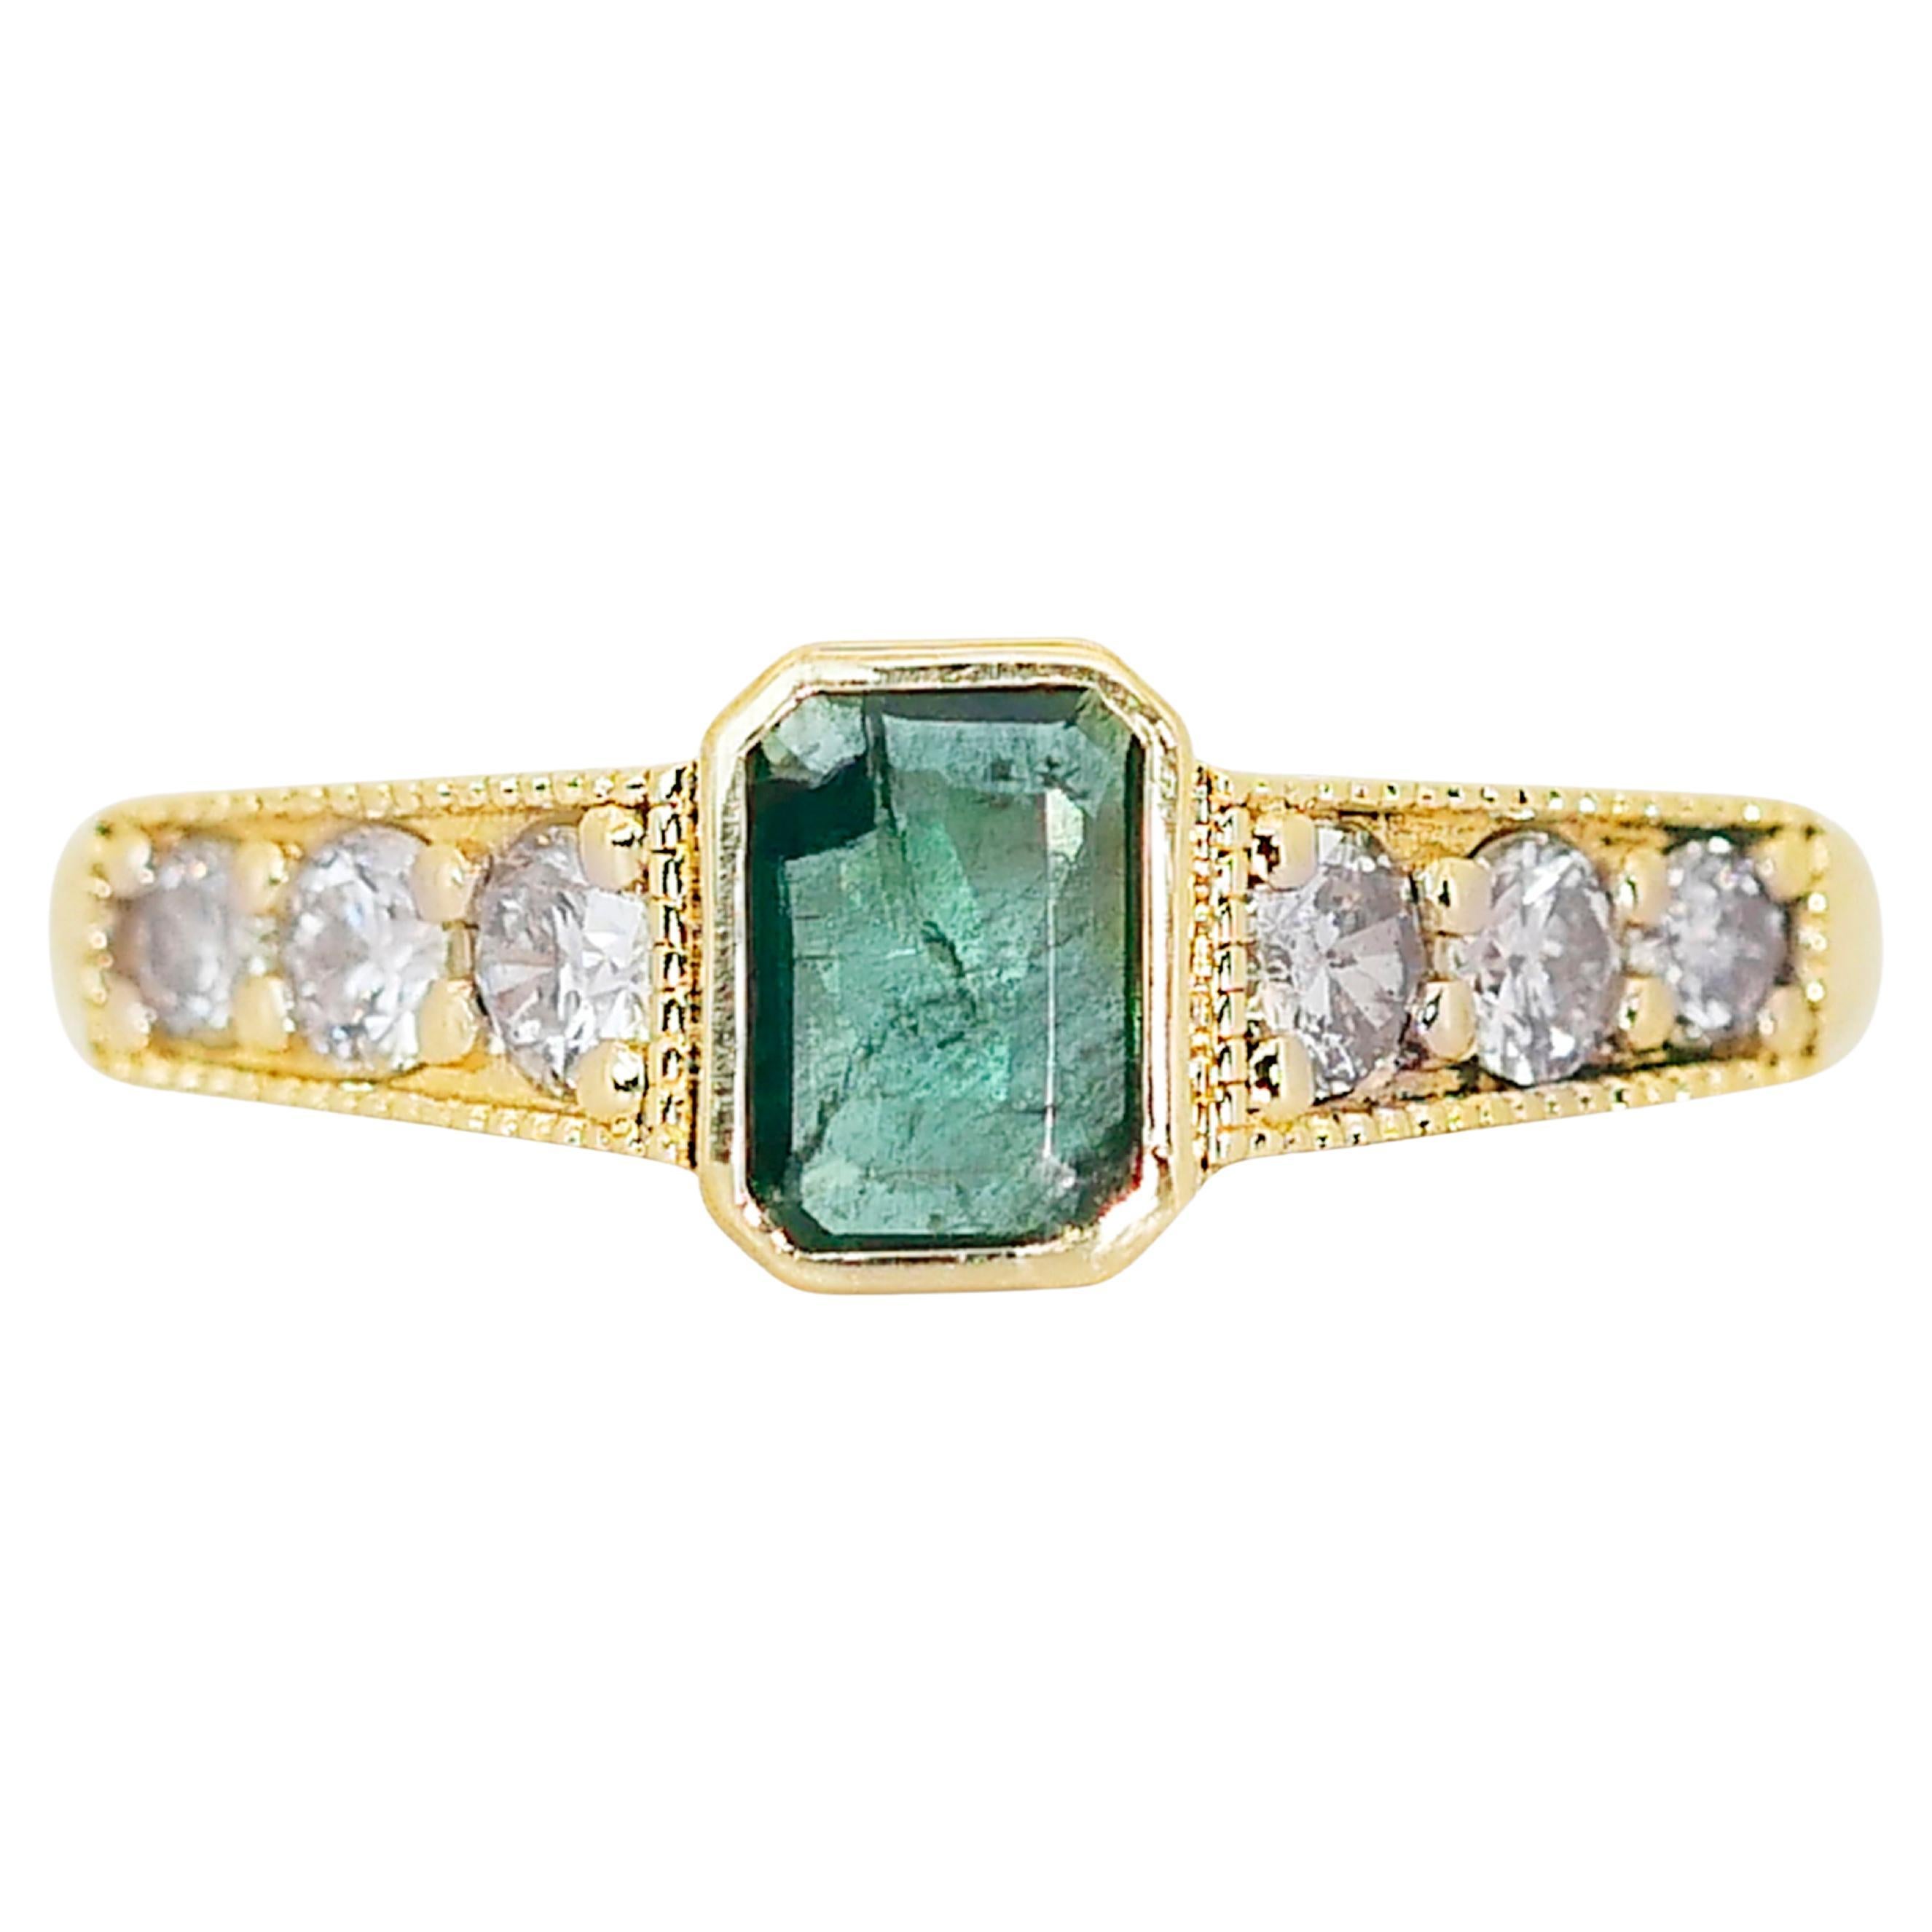 Bezaubernder 14k Gelbgold Smaragd & Diamant Pave-Ring mit/0,89 ct - IGI-zertifiziert